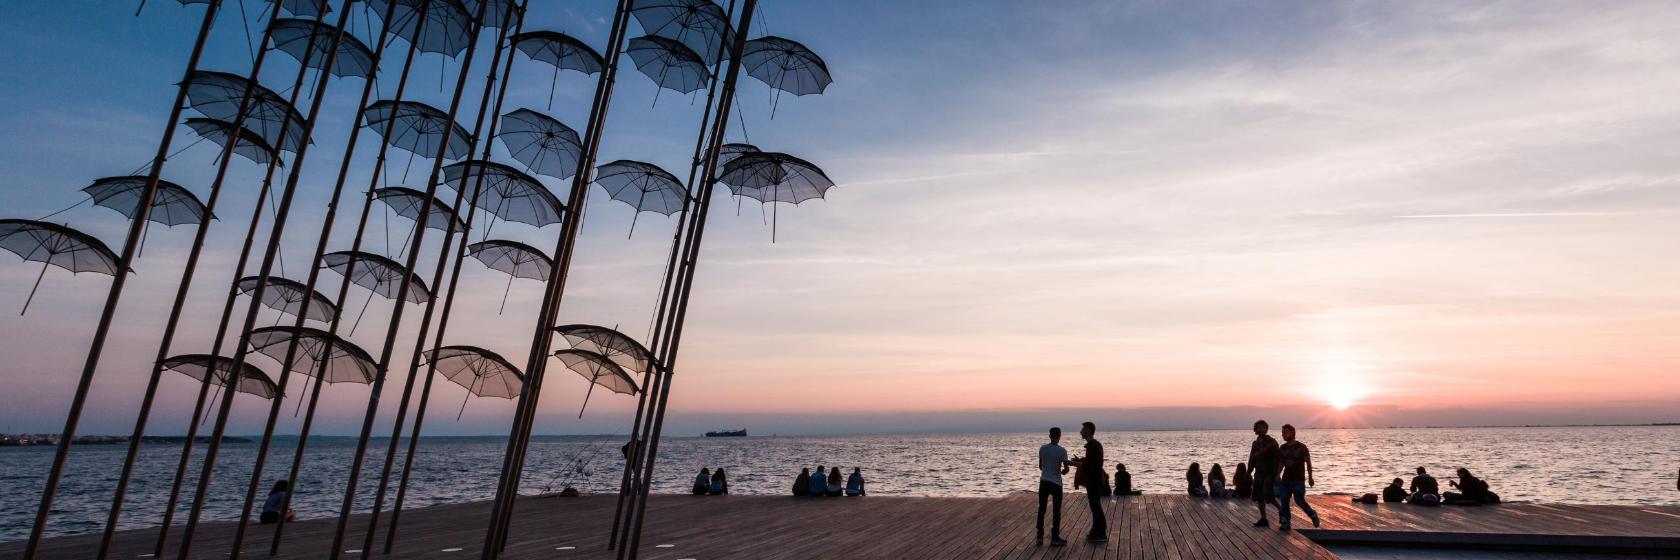 Τα 10 Καλύτερα Ξενοδοχεία στη Θεσσαλονίκη (Τιμές από € 35)